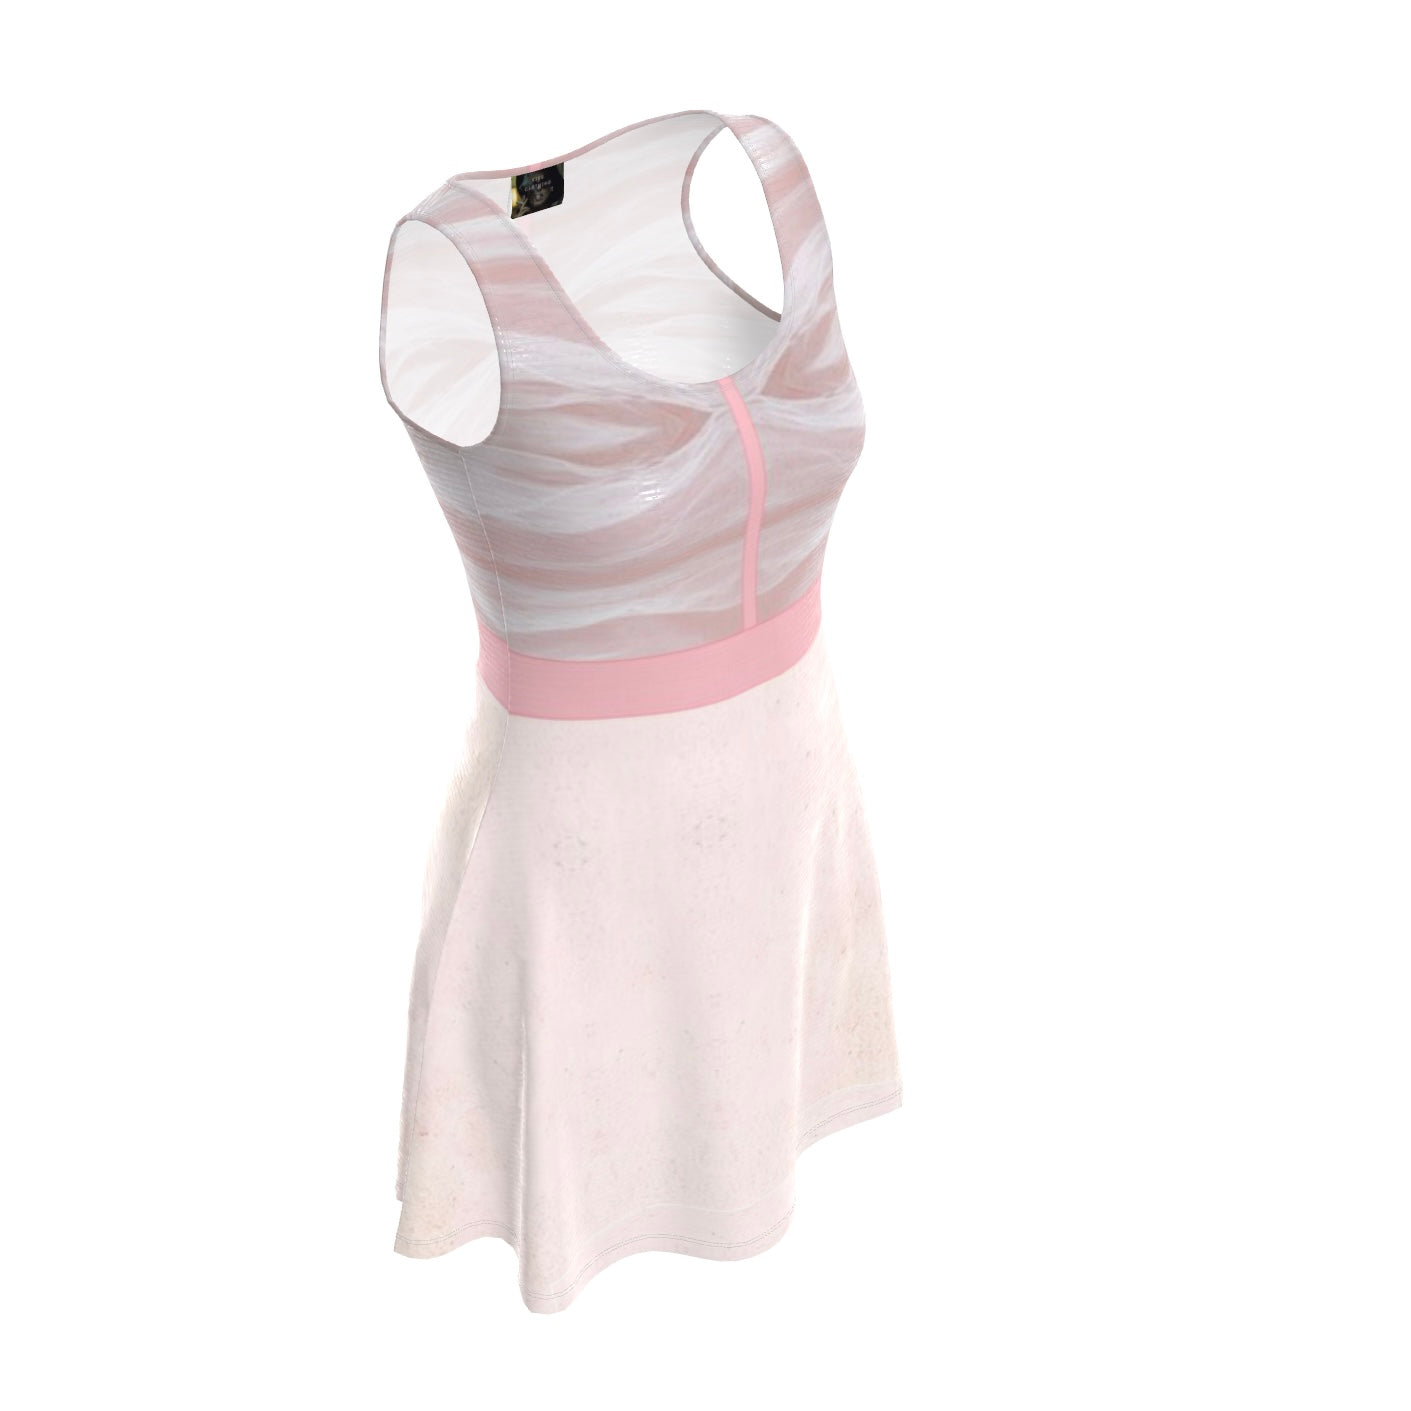 Marla Singer Pink Velour KiSS Skater Dress - Fight Club Inspired - Cosplay Handmade